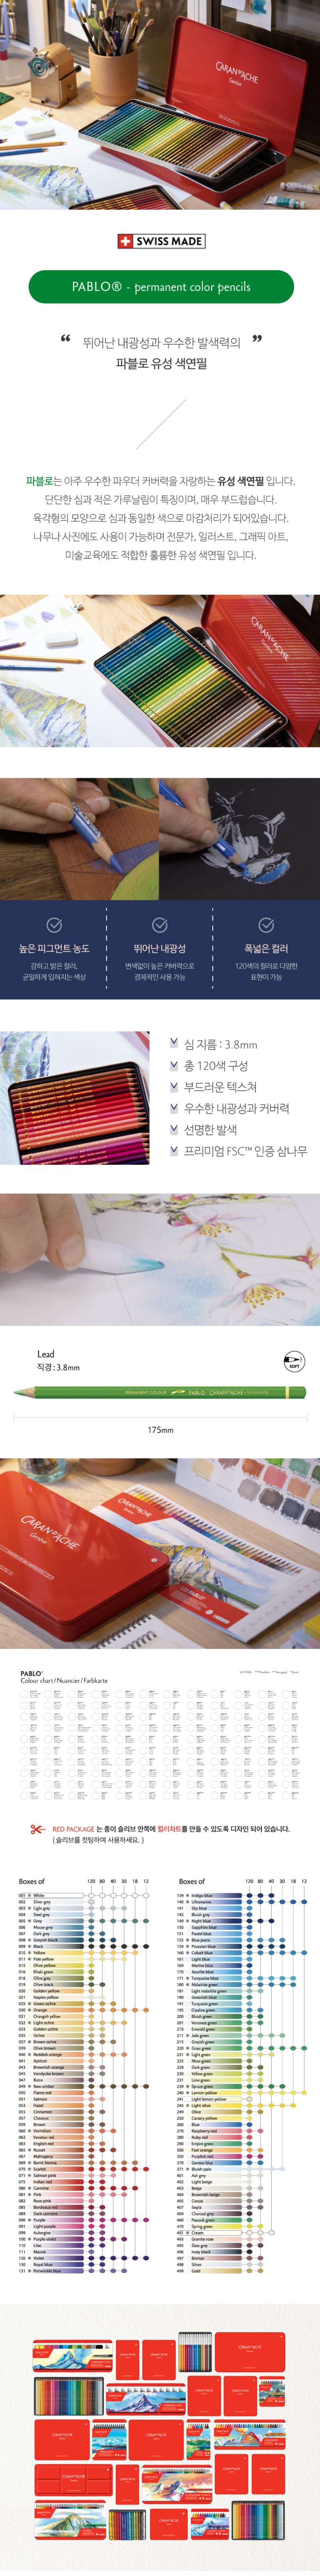 까렌다쉬 파블로 유성색연필 상세 설명 및 컬러차트